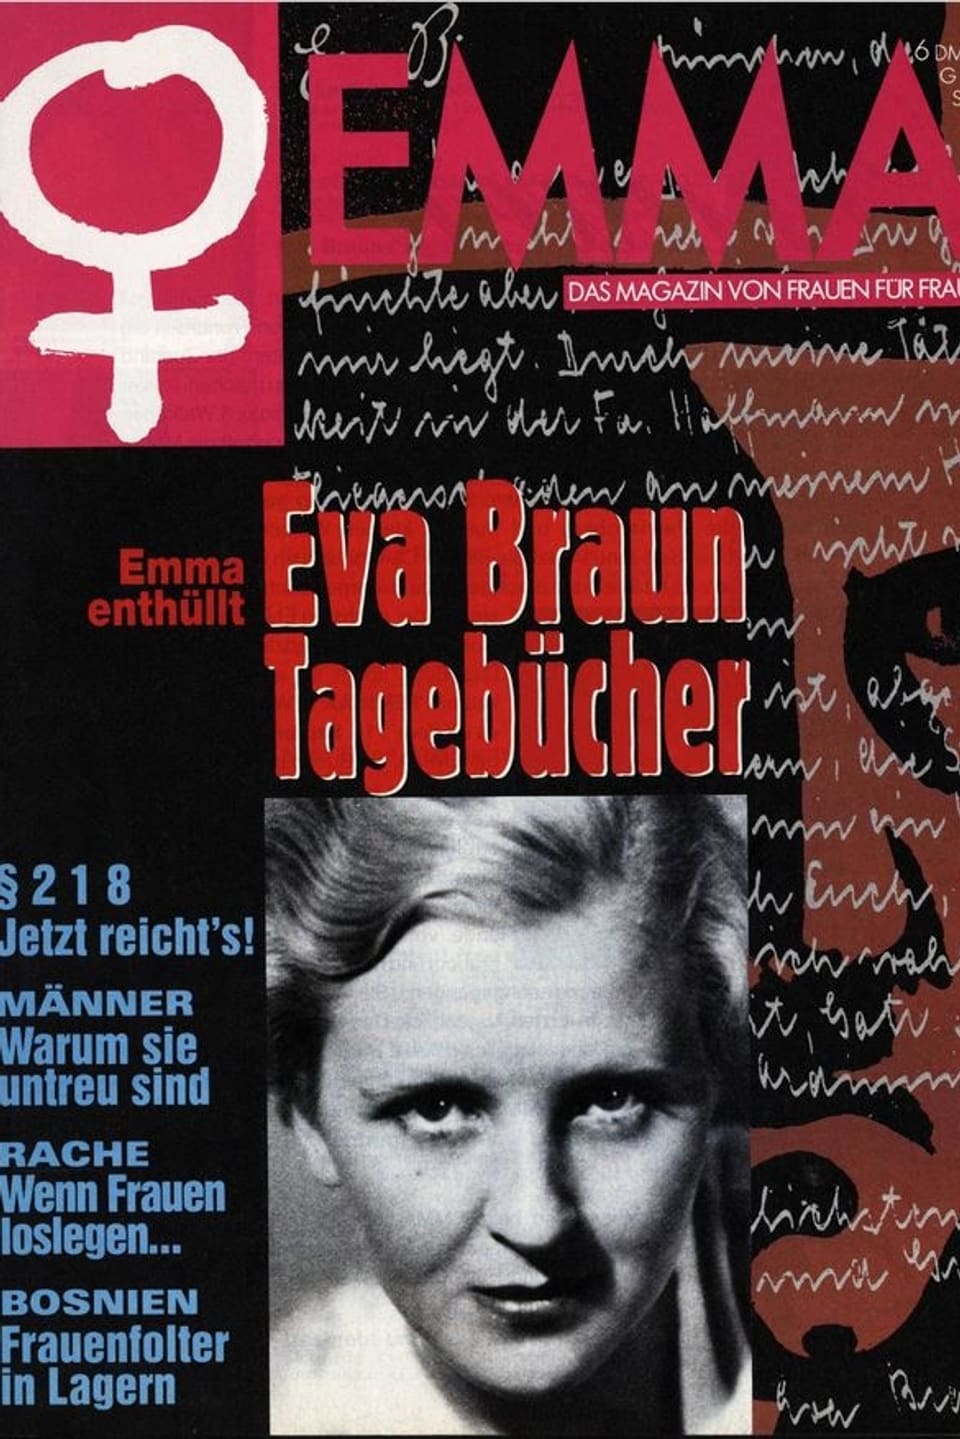 Ausschnitt Frontseite mit Eva-Braun Tagebücher-Schlagzeile.